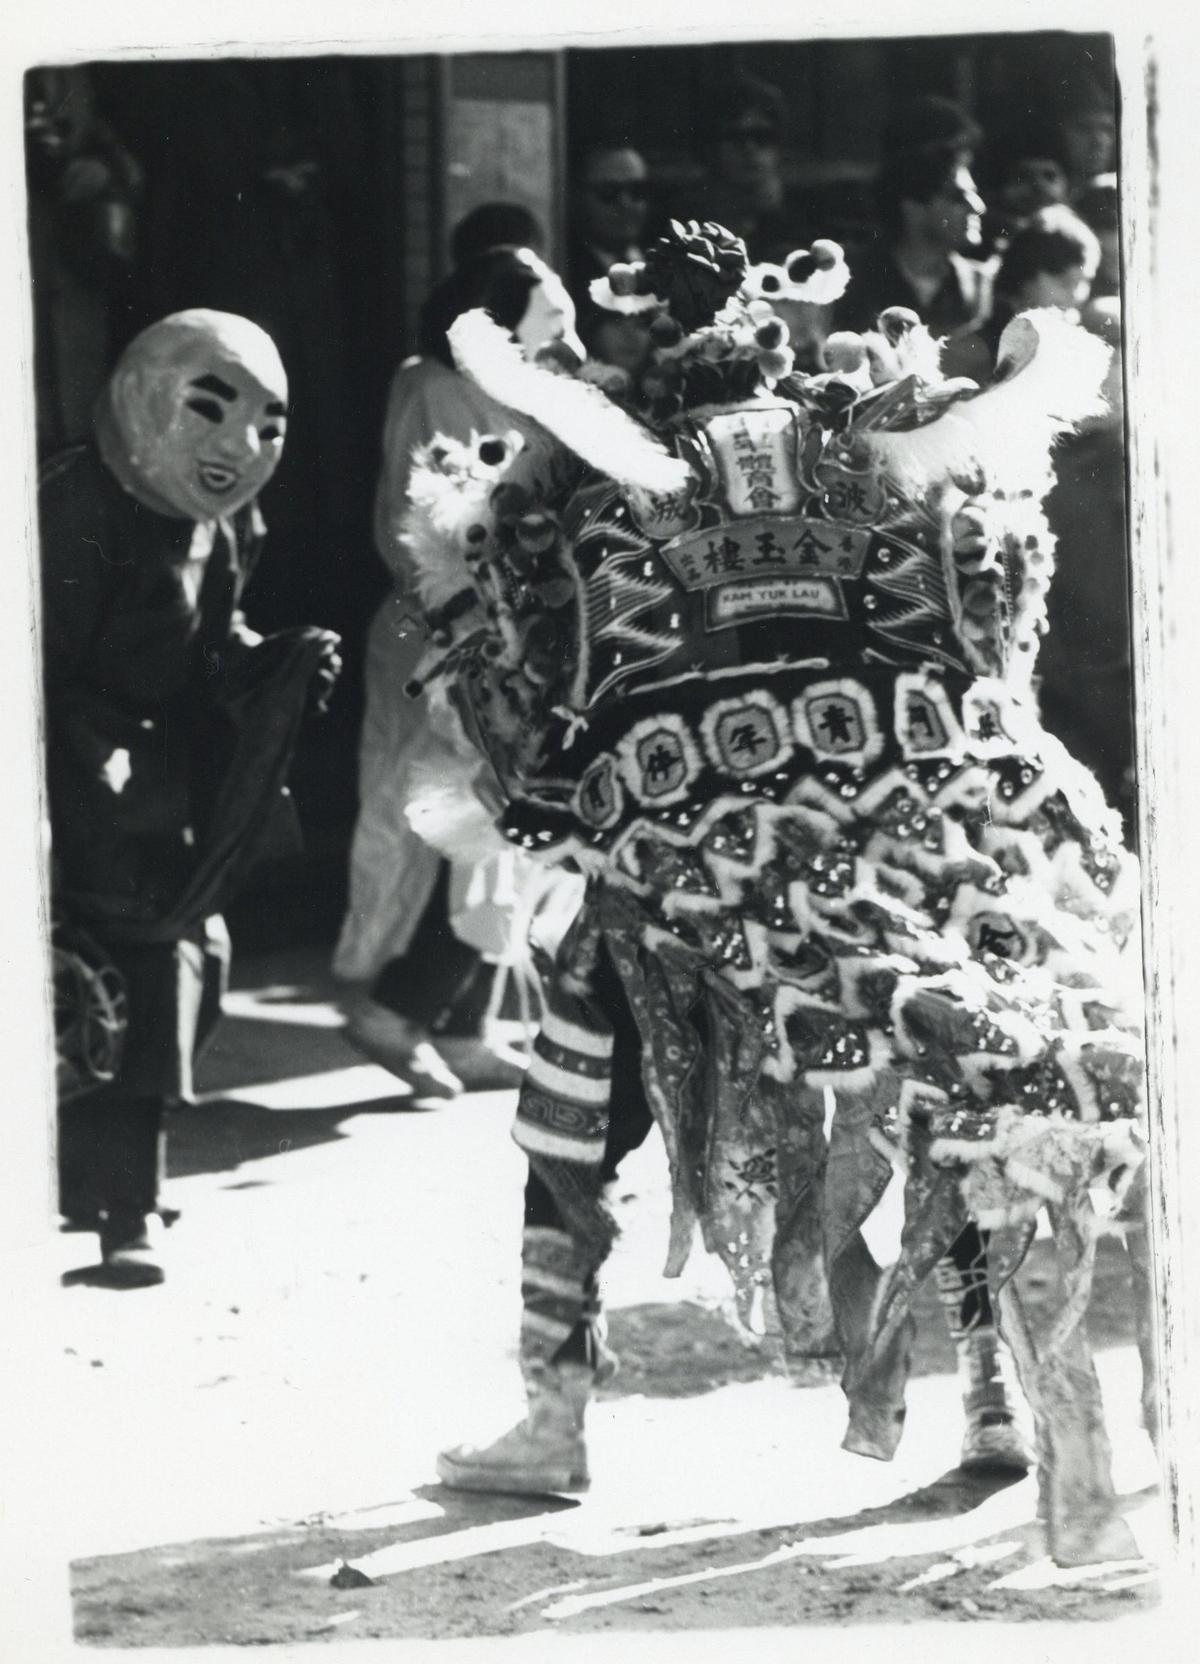 Chinese New Year celebration, Chinatown, Boston, MA., circa 1968-1970, Boston City Archives